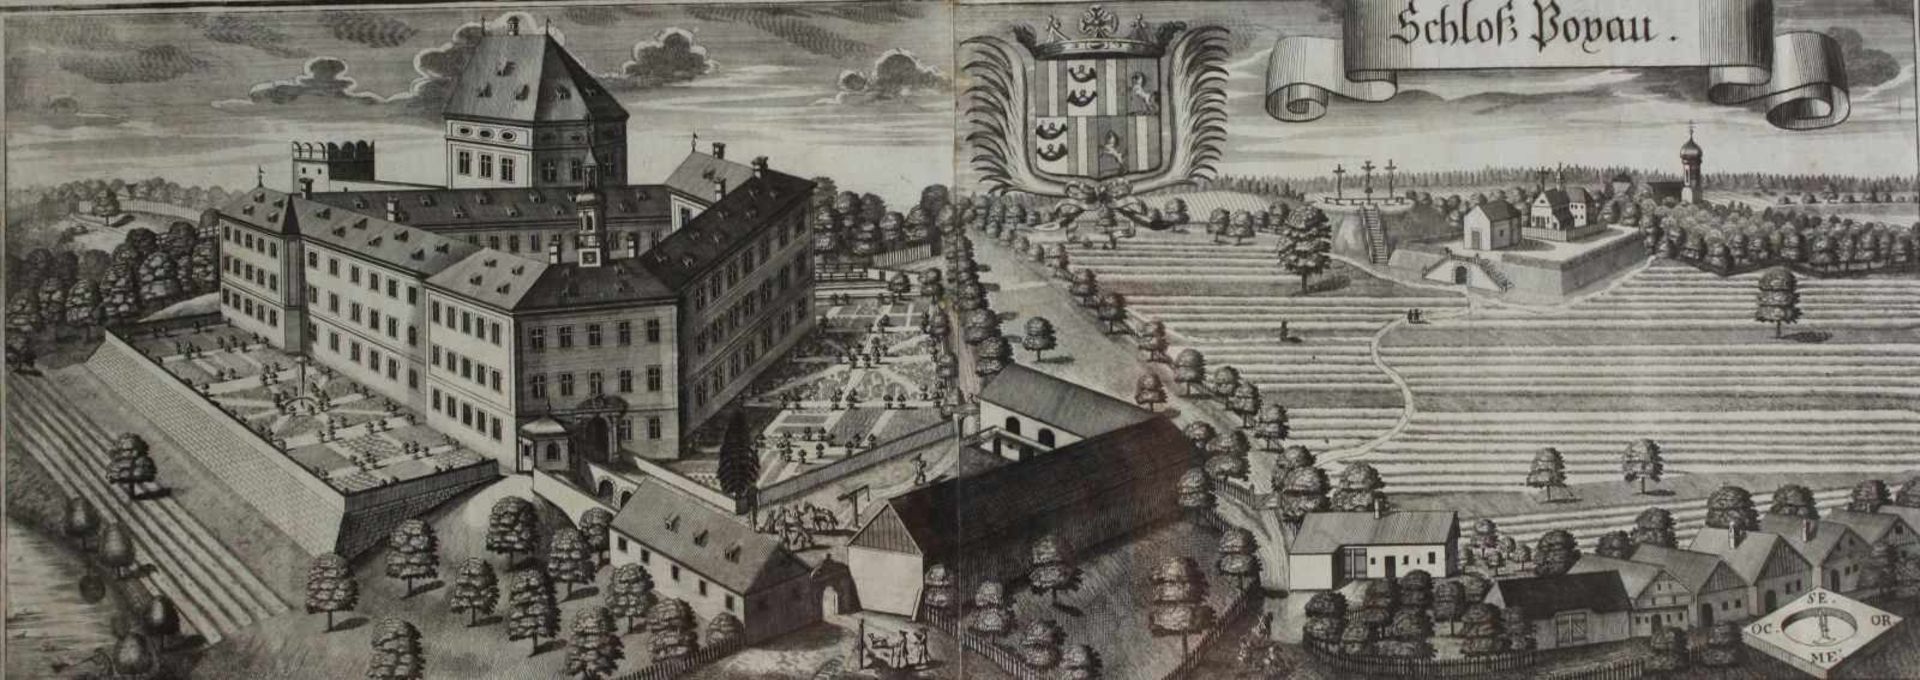 Großer Kupferstich - Michael Wening (1645 Nürnberg - 1718 München) "Schloß Poxau in Niederbayern",